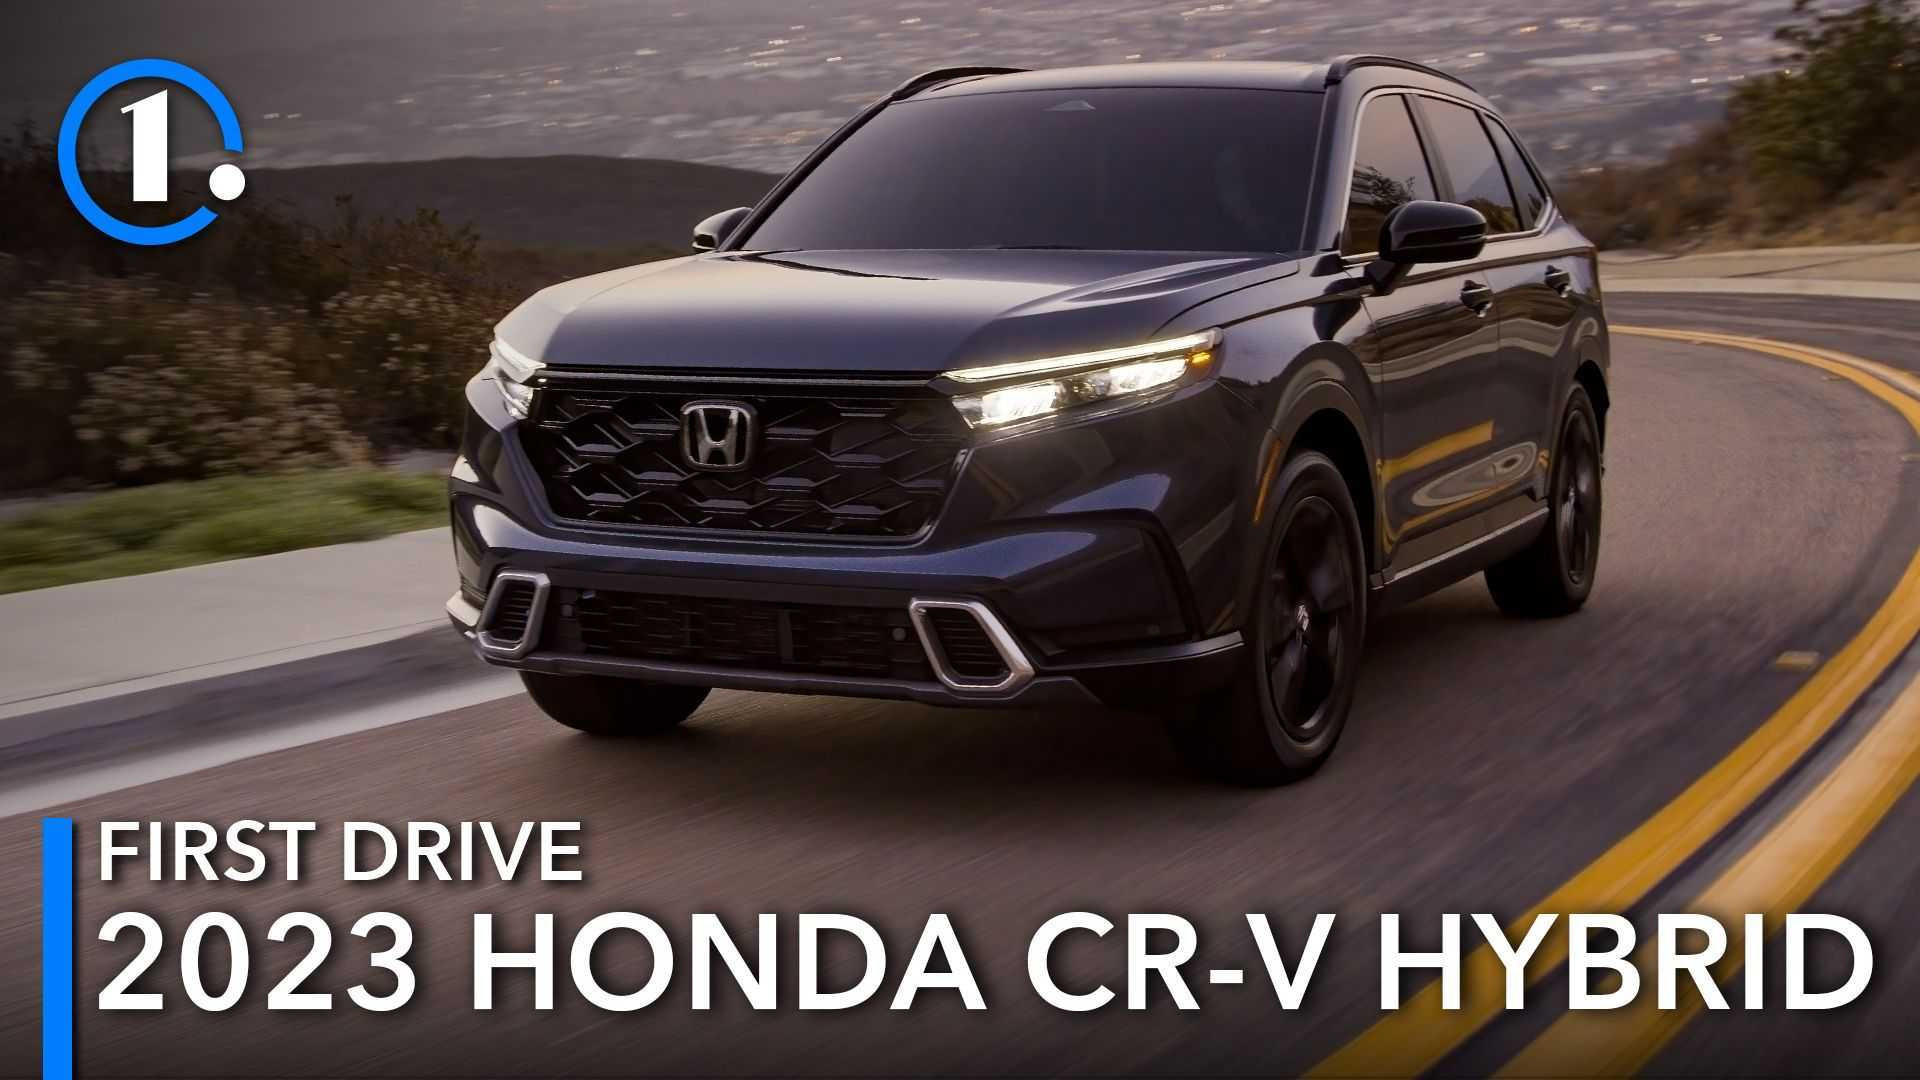 Honda Crv Hybrid 2023 Exterior and Interior